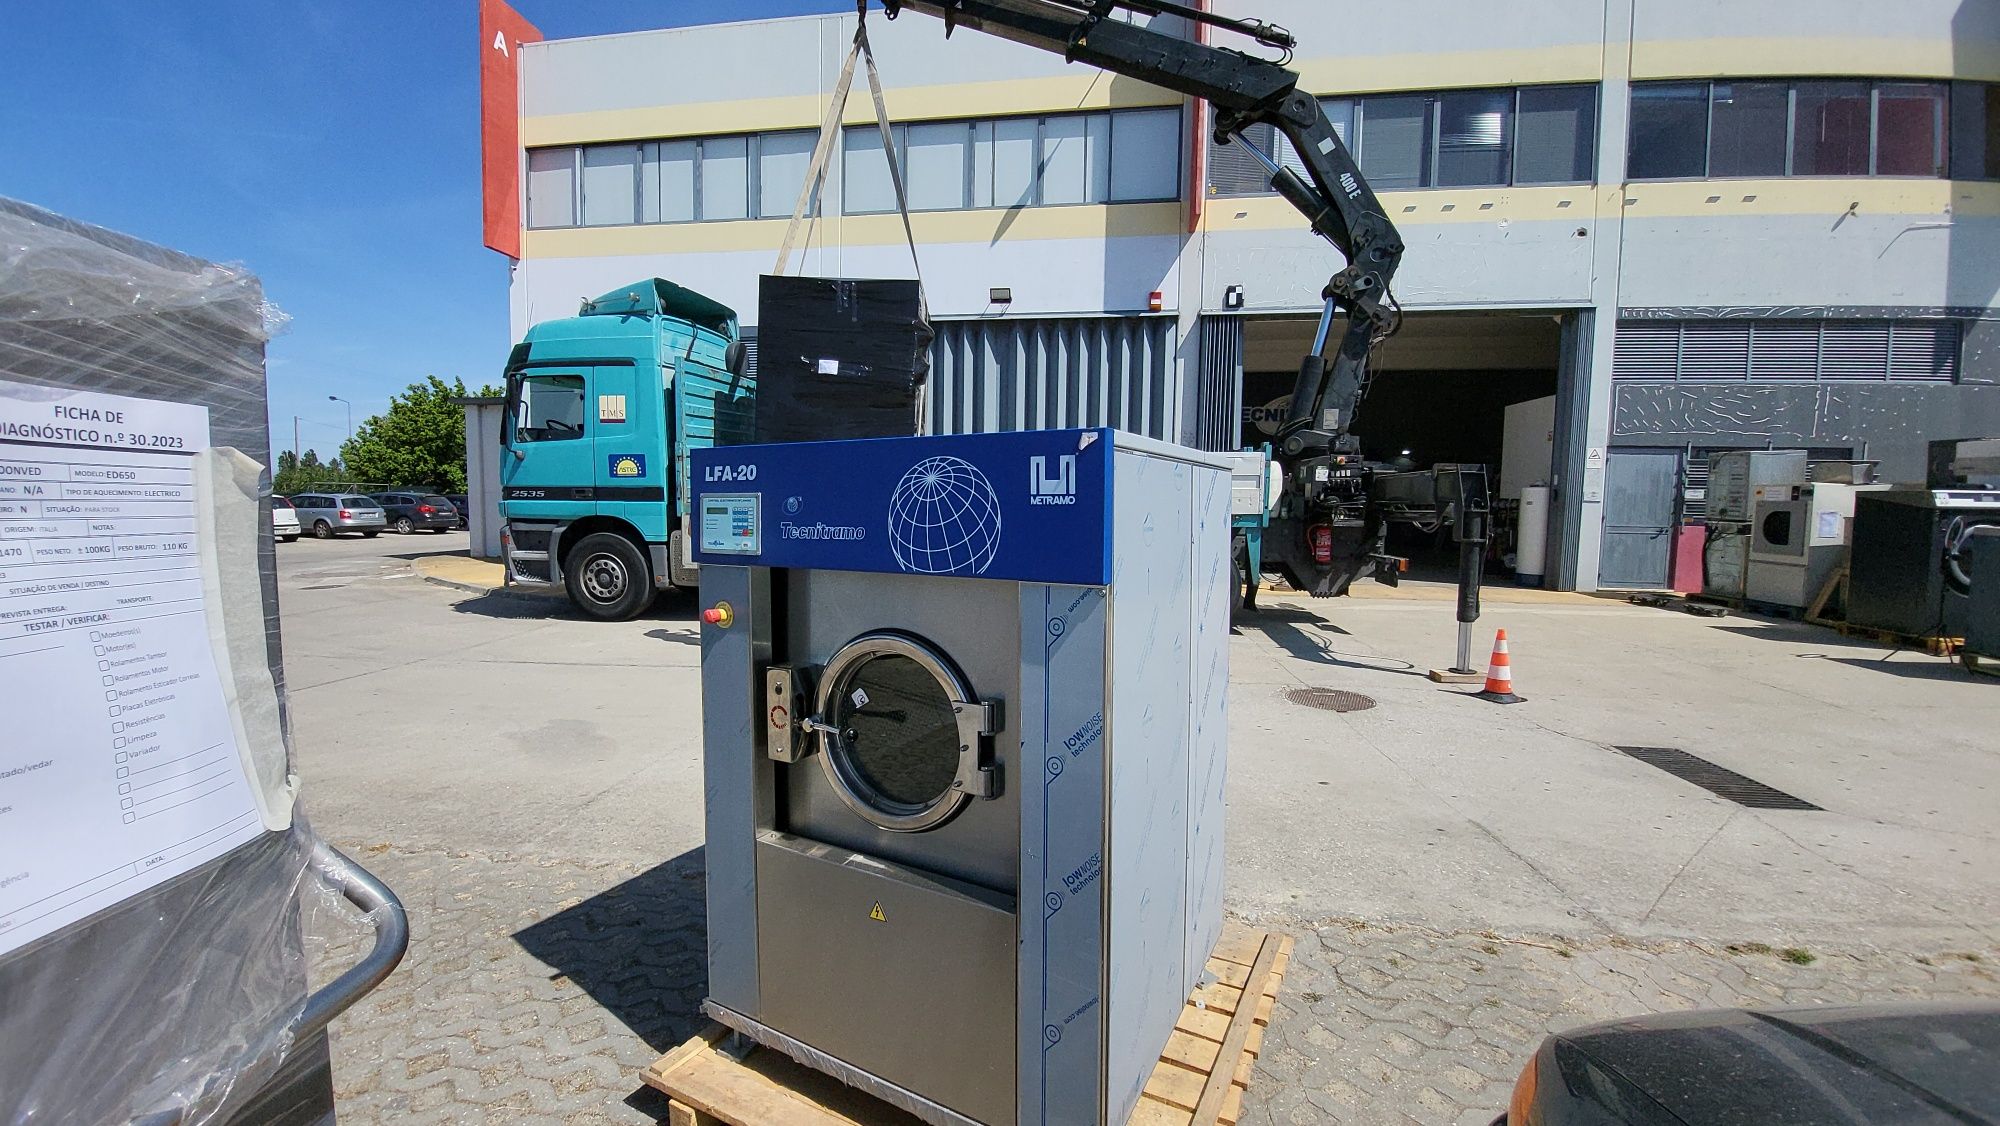 Maquina de lavar roupa industrial 22kg